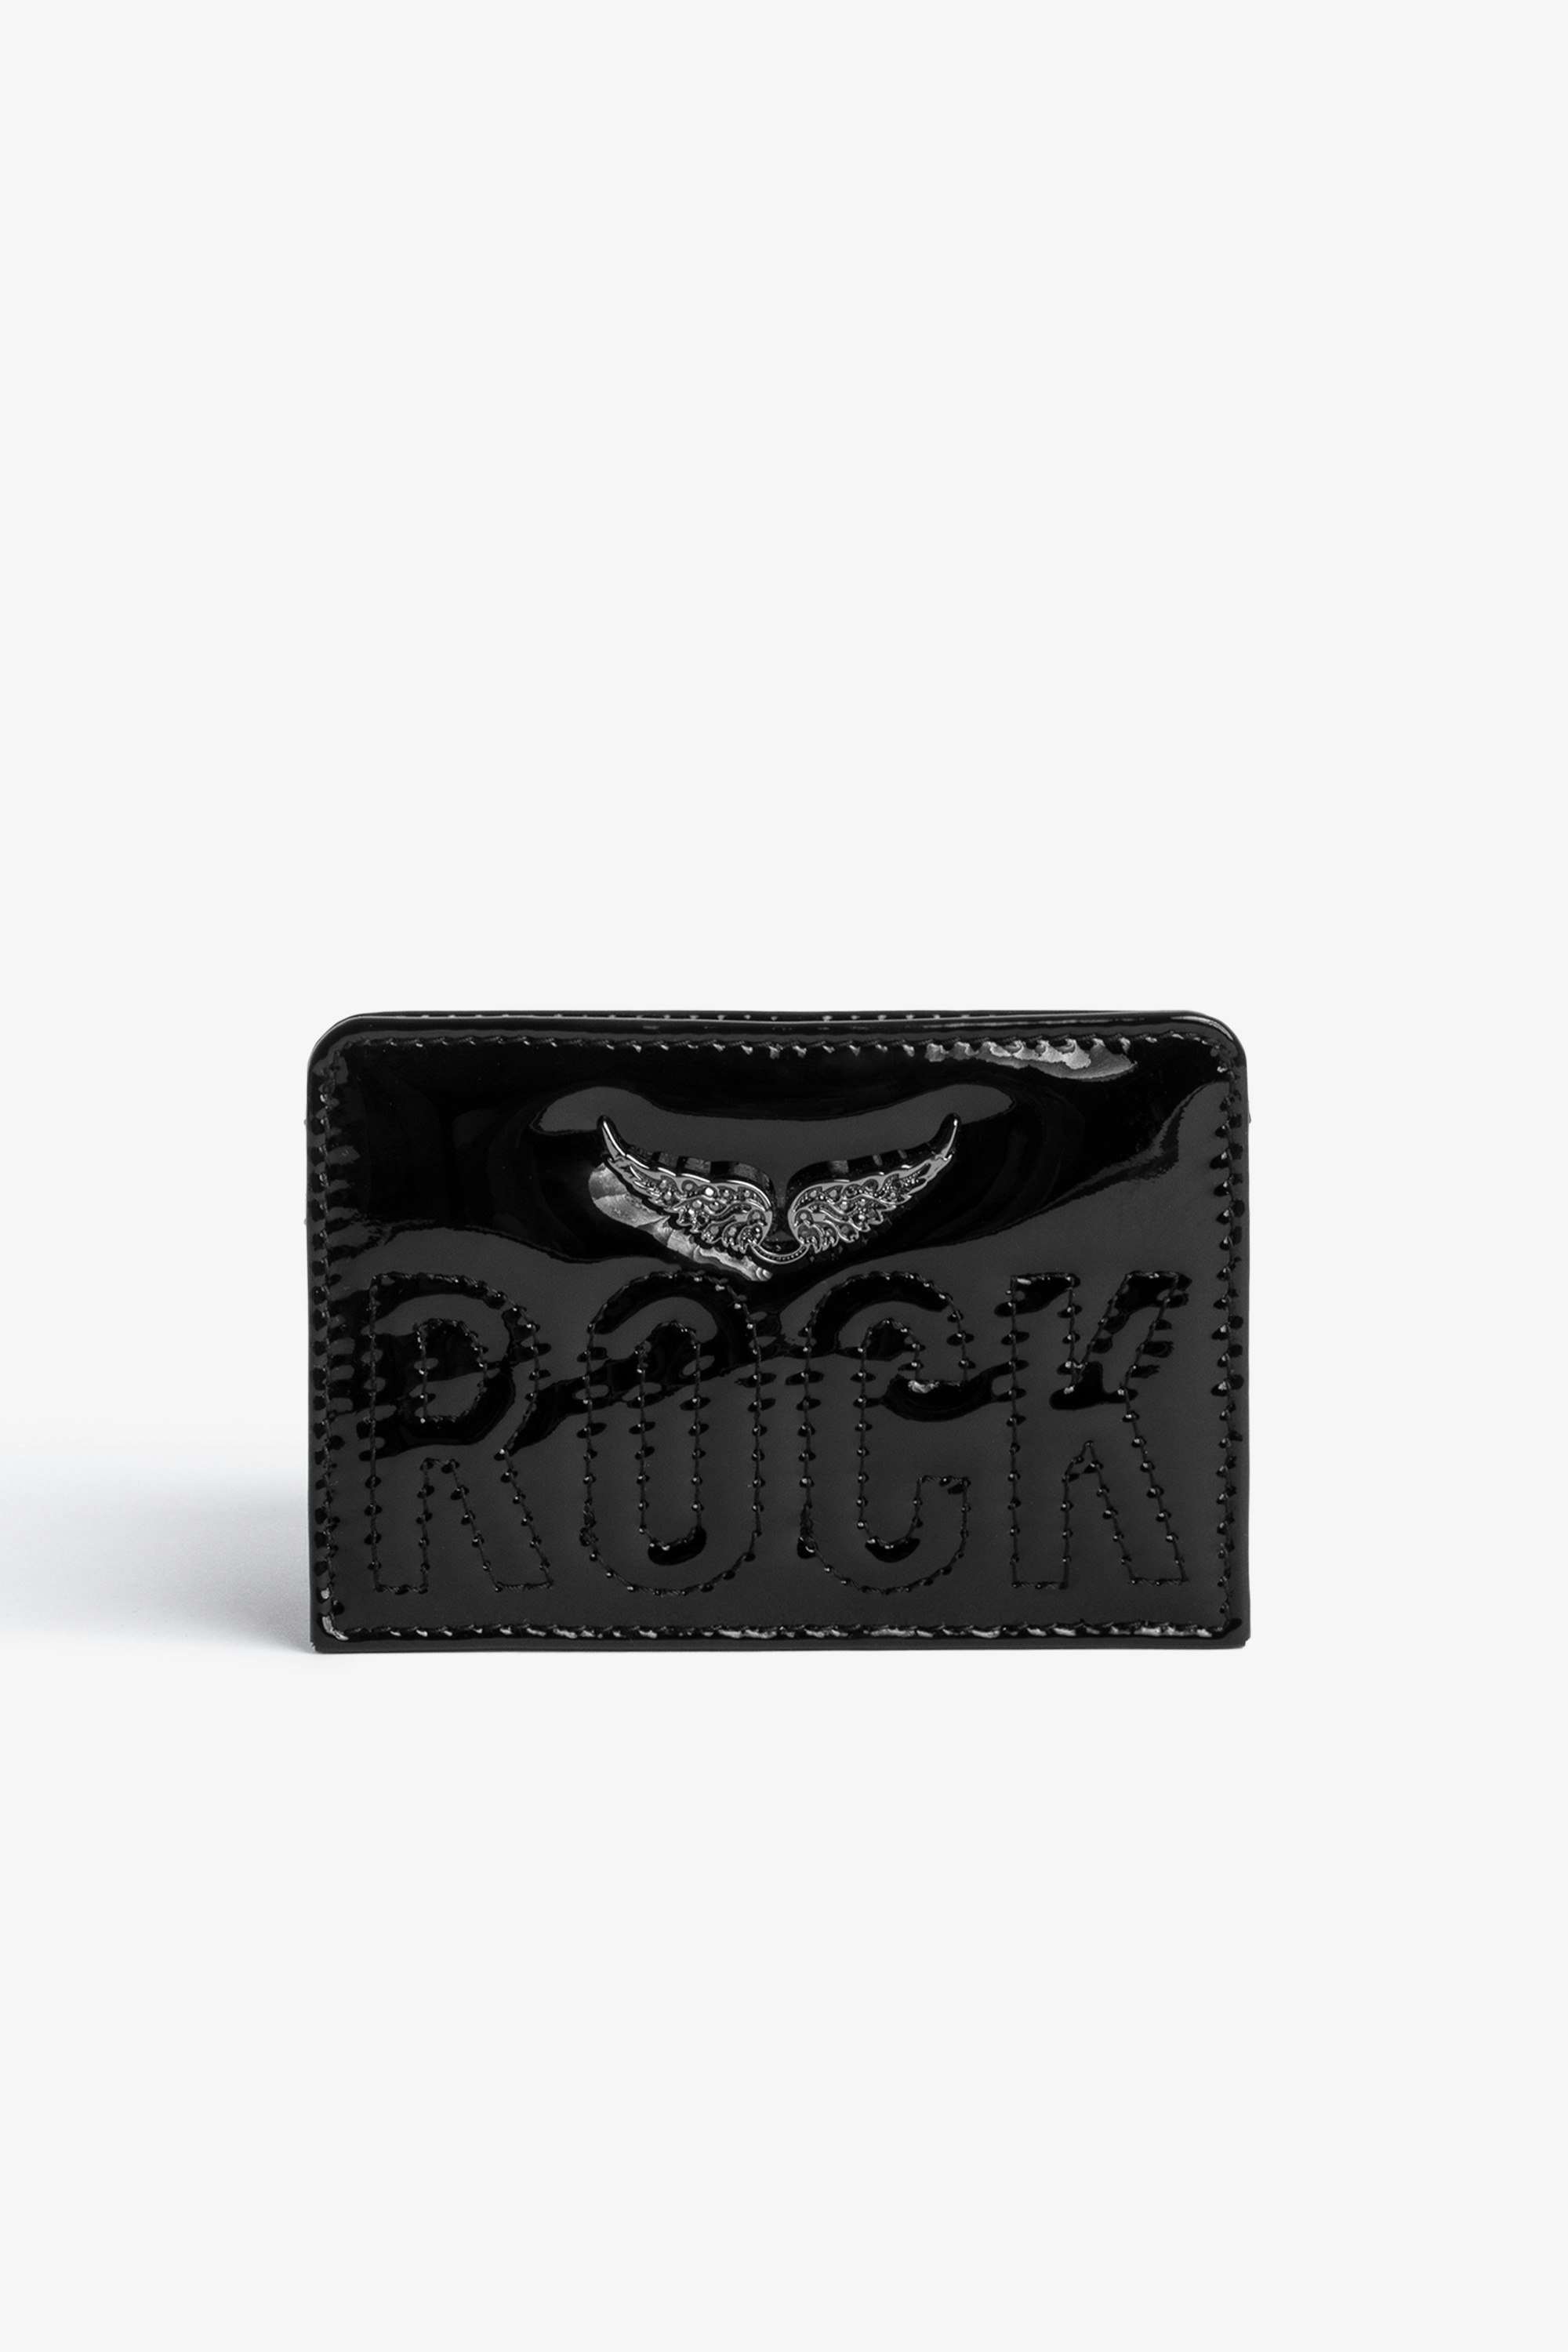 Porte-cartes ZV Pass Porte-Cartes en cuir brillant noir orné du message "Rock" surpiqué et d'un charm ailes serties de cristaux femme